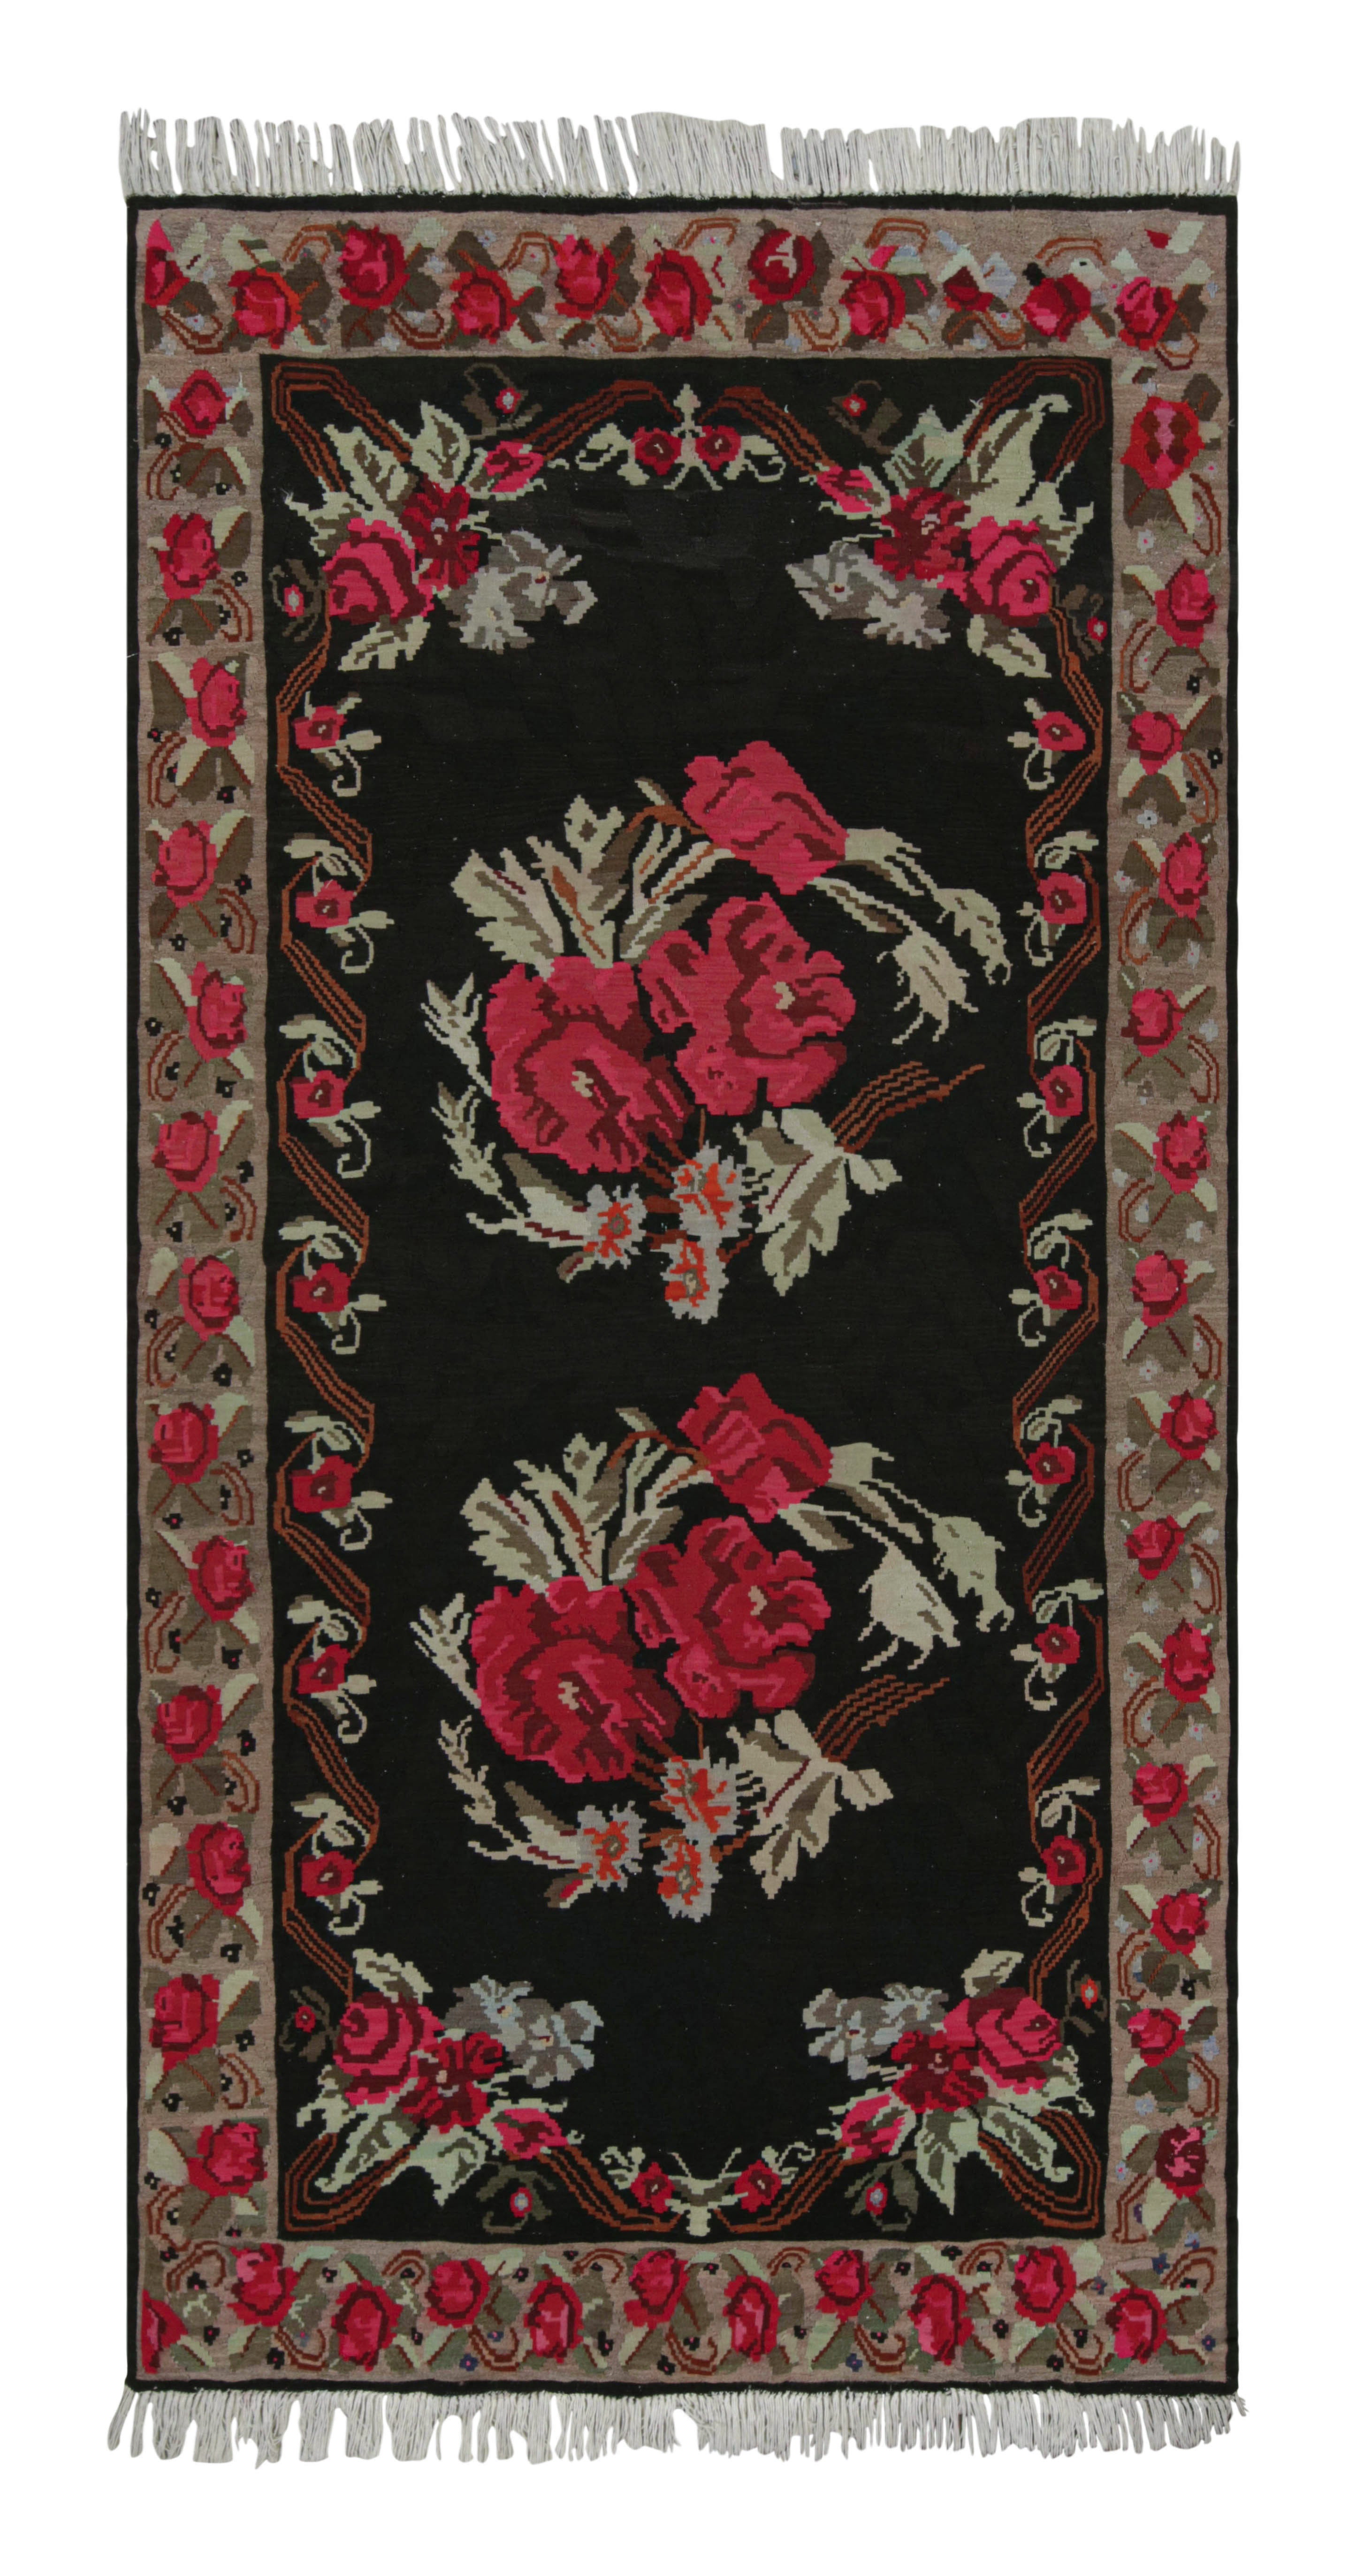 Midcentury Kilim Rug Vintage Black Red Floral Pattern Flat-Weave by Rug & Kilim